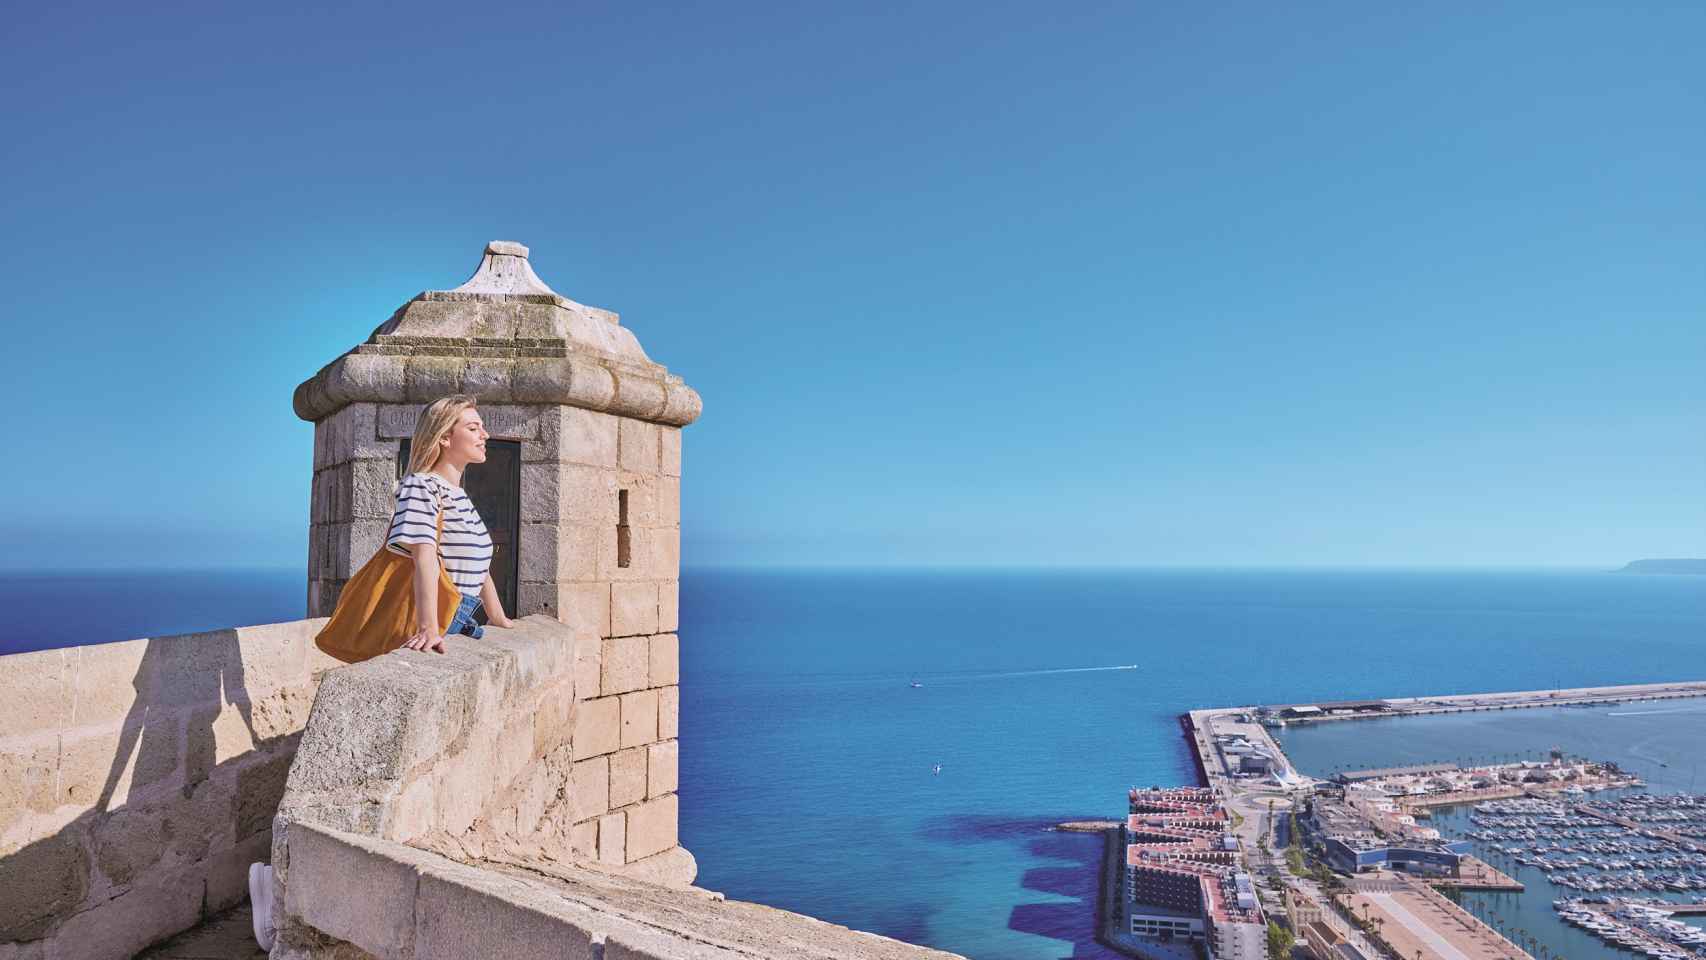 El castillo de Santa Bárbara de Alicante es el monumento más visitado de la Comunitat Valenciana.